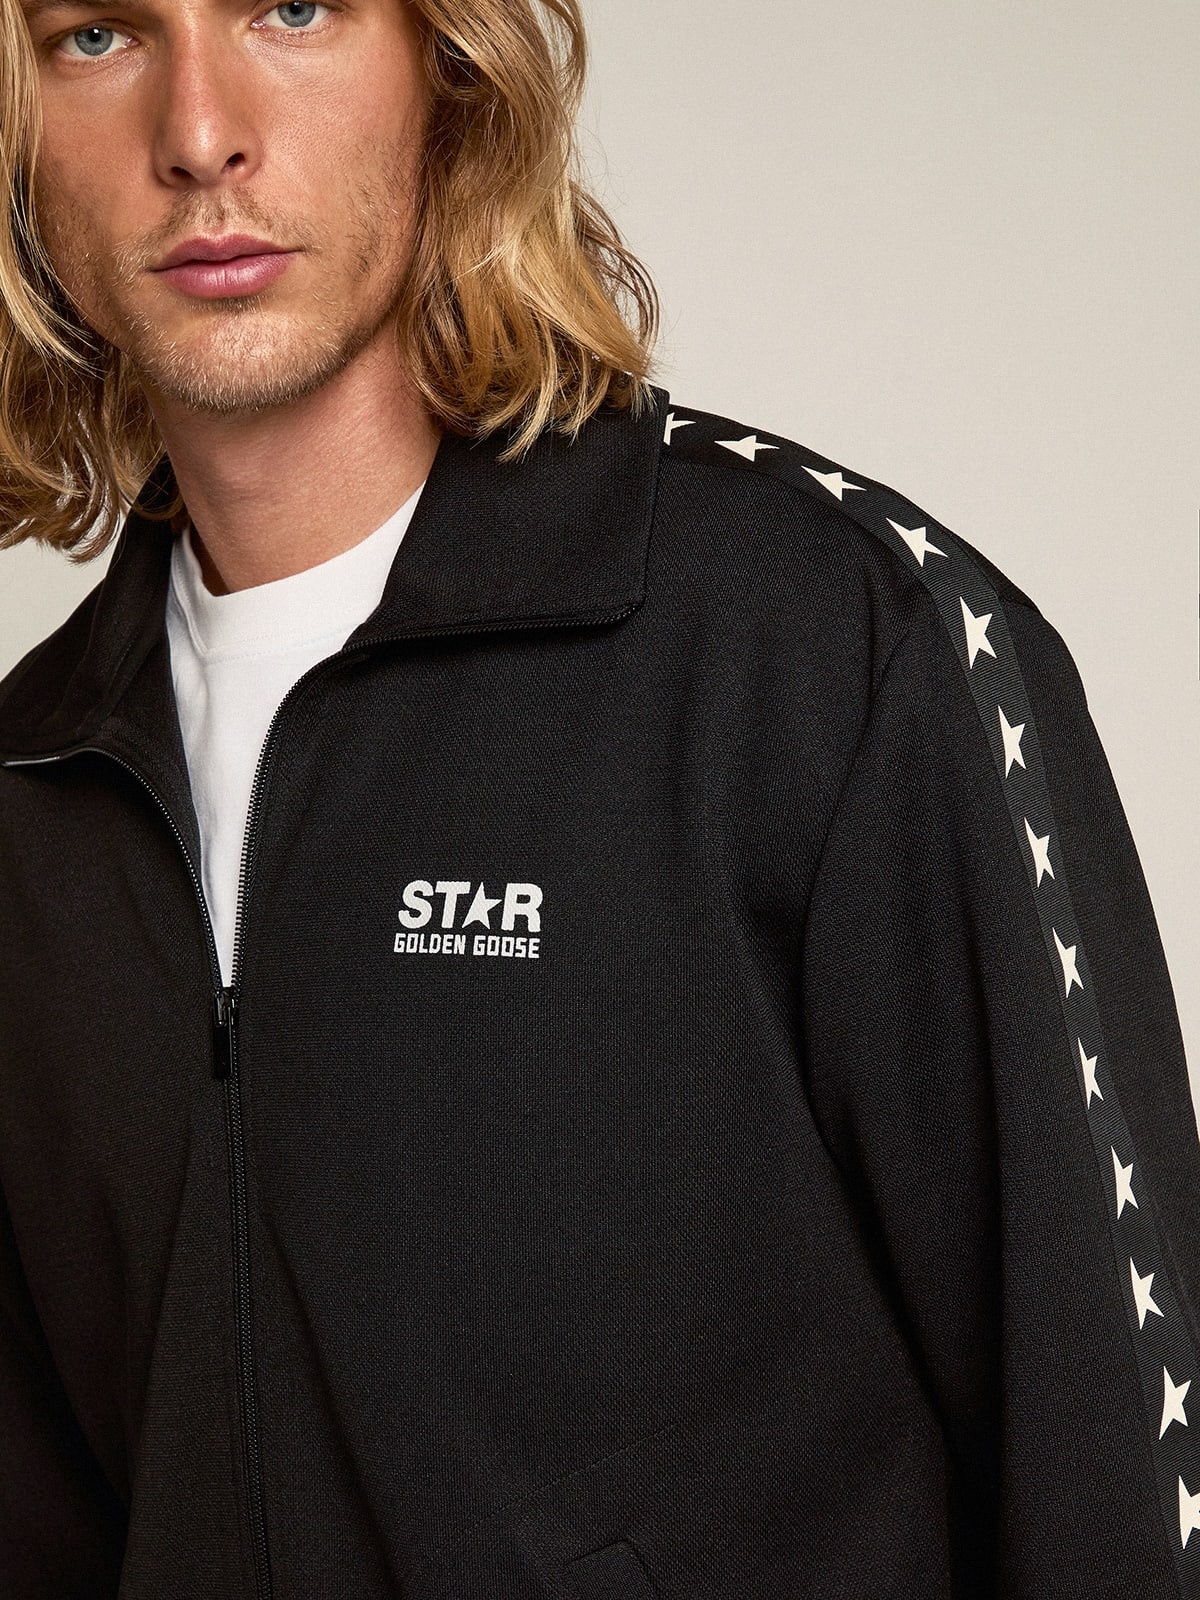 Men’s black zipped sweatshirt with white stars - 2